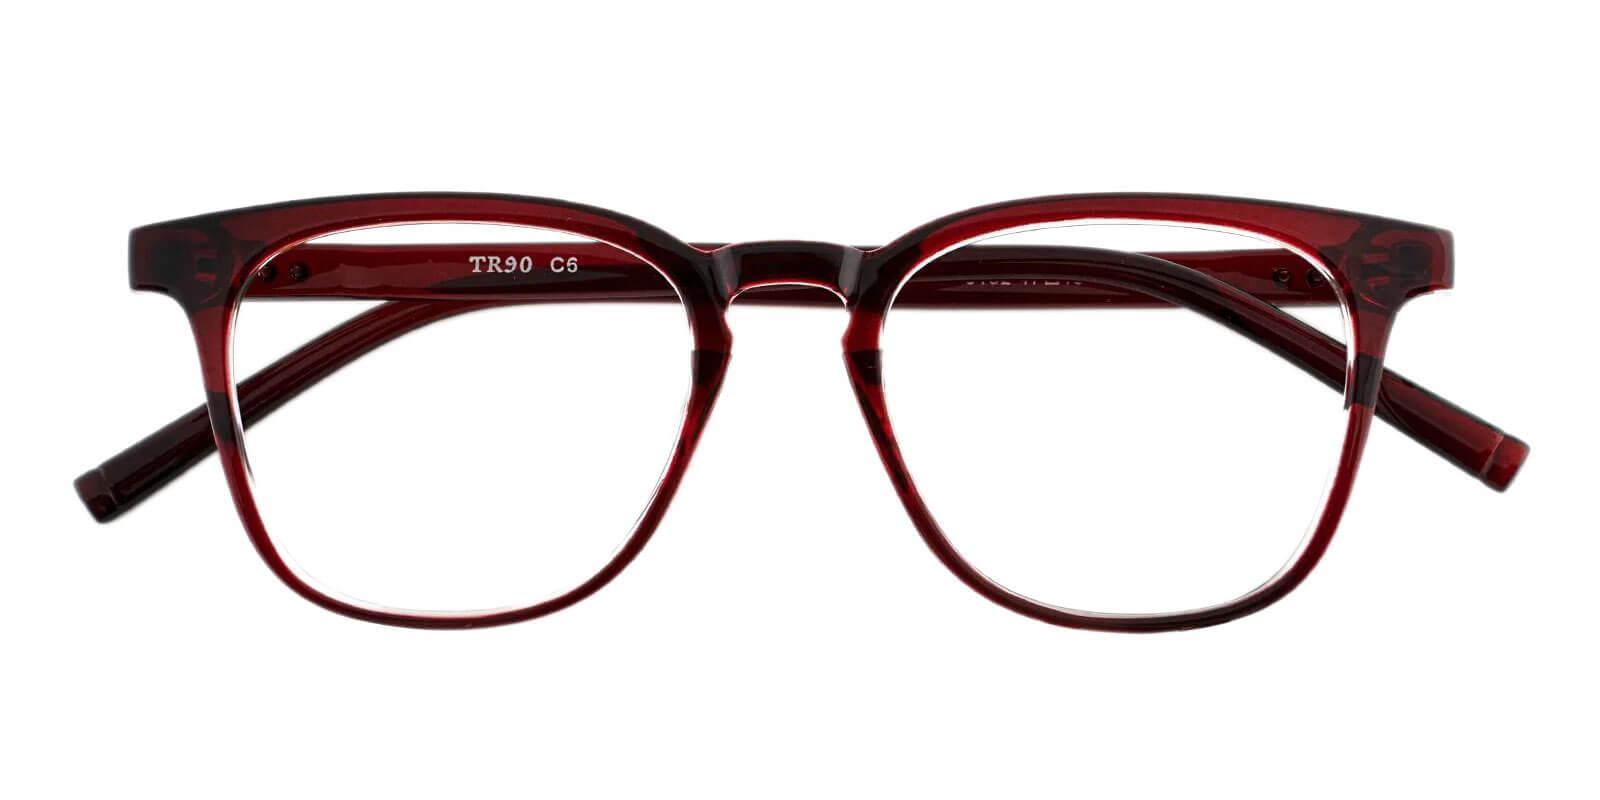 Zaire Red TR Eyeglasses , UniversalBridgeFit Frames from ABBE Glasses